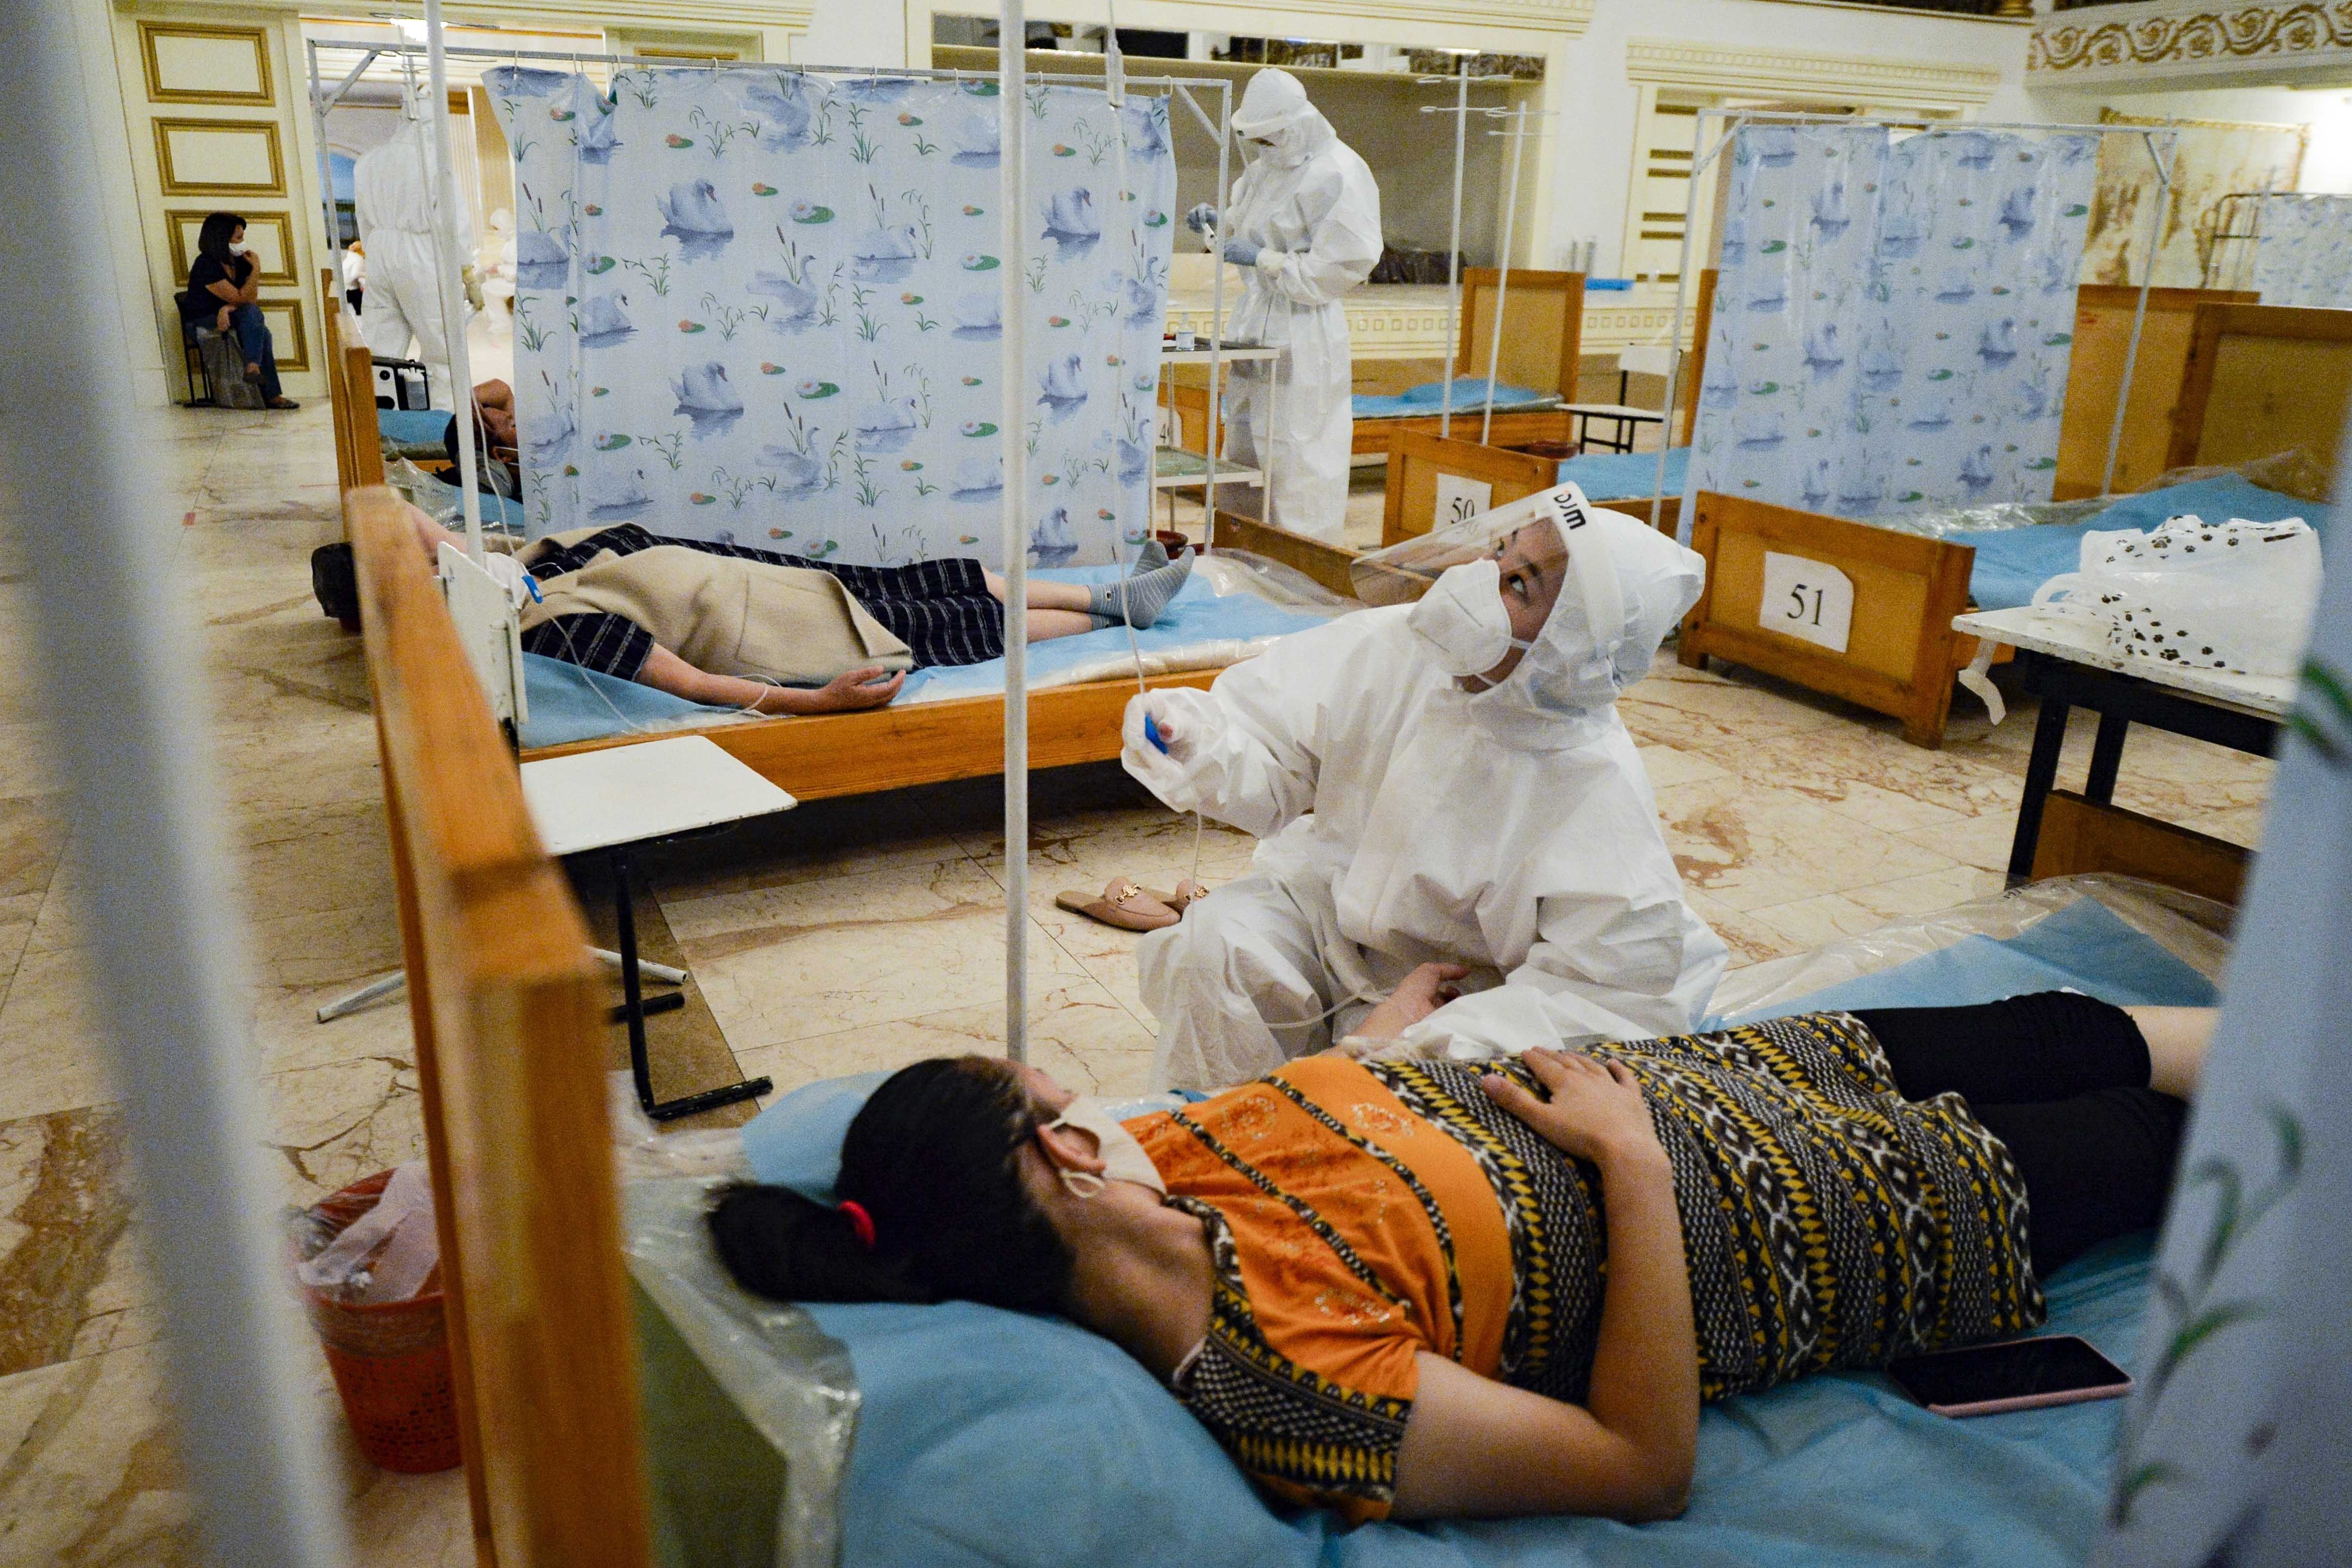 Cette travailleuse de la santé examinait la tubulure de perfusion intraveineuse administrée à une patiente dans un restaurant converti en clinique temporaire, lors de la pandémie de Covid-19 à Bichkek, au Kirghizistan, en juillet 2020.